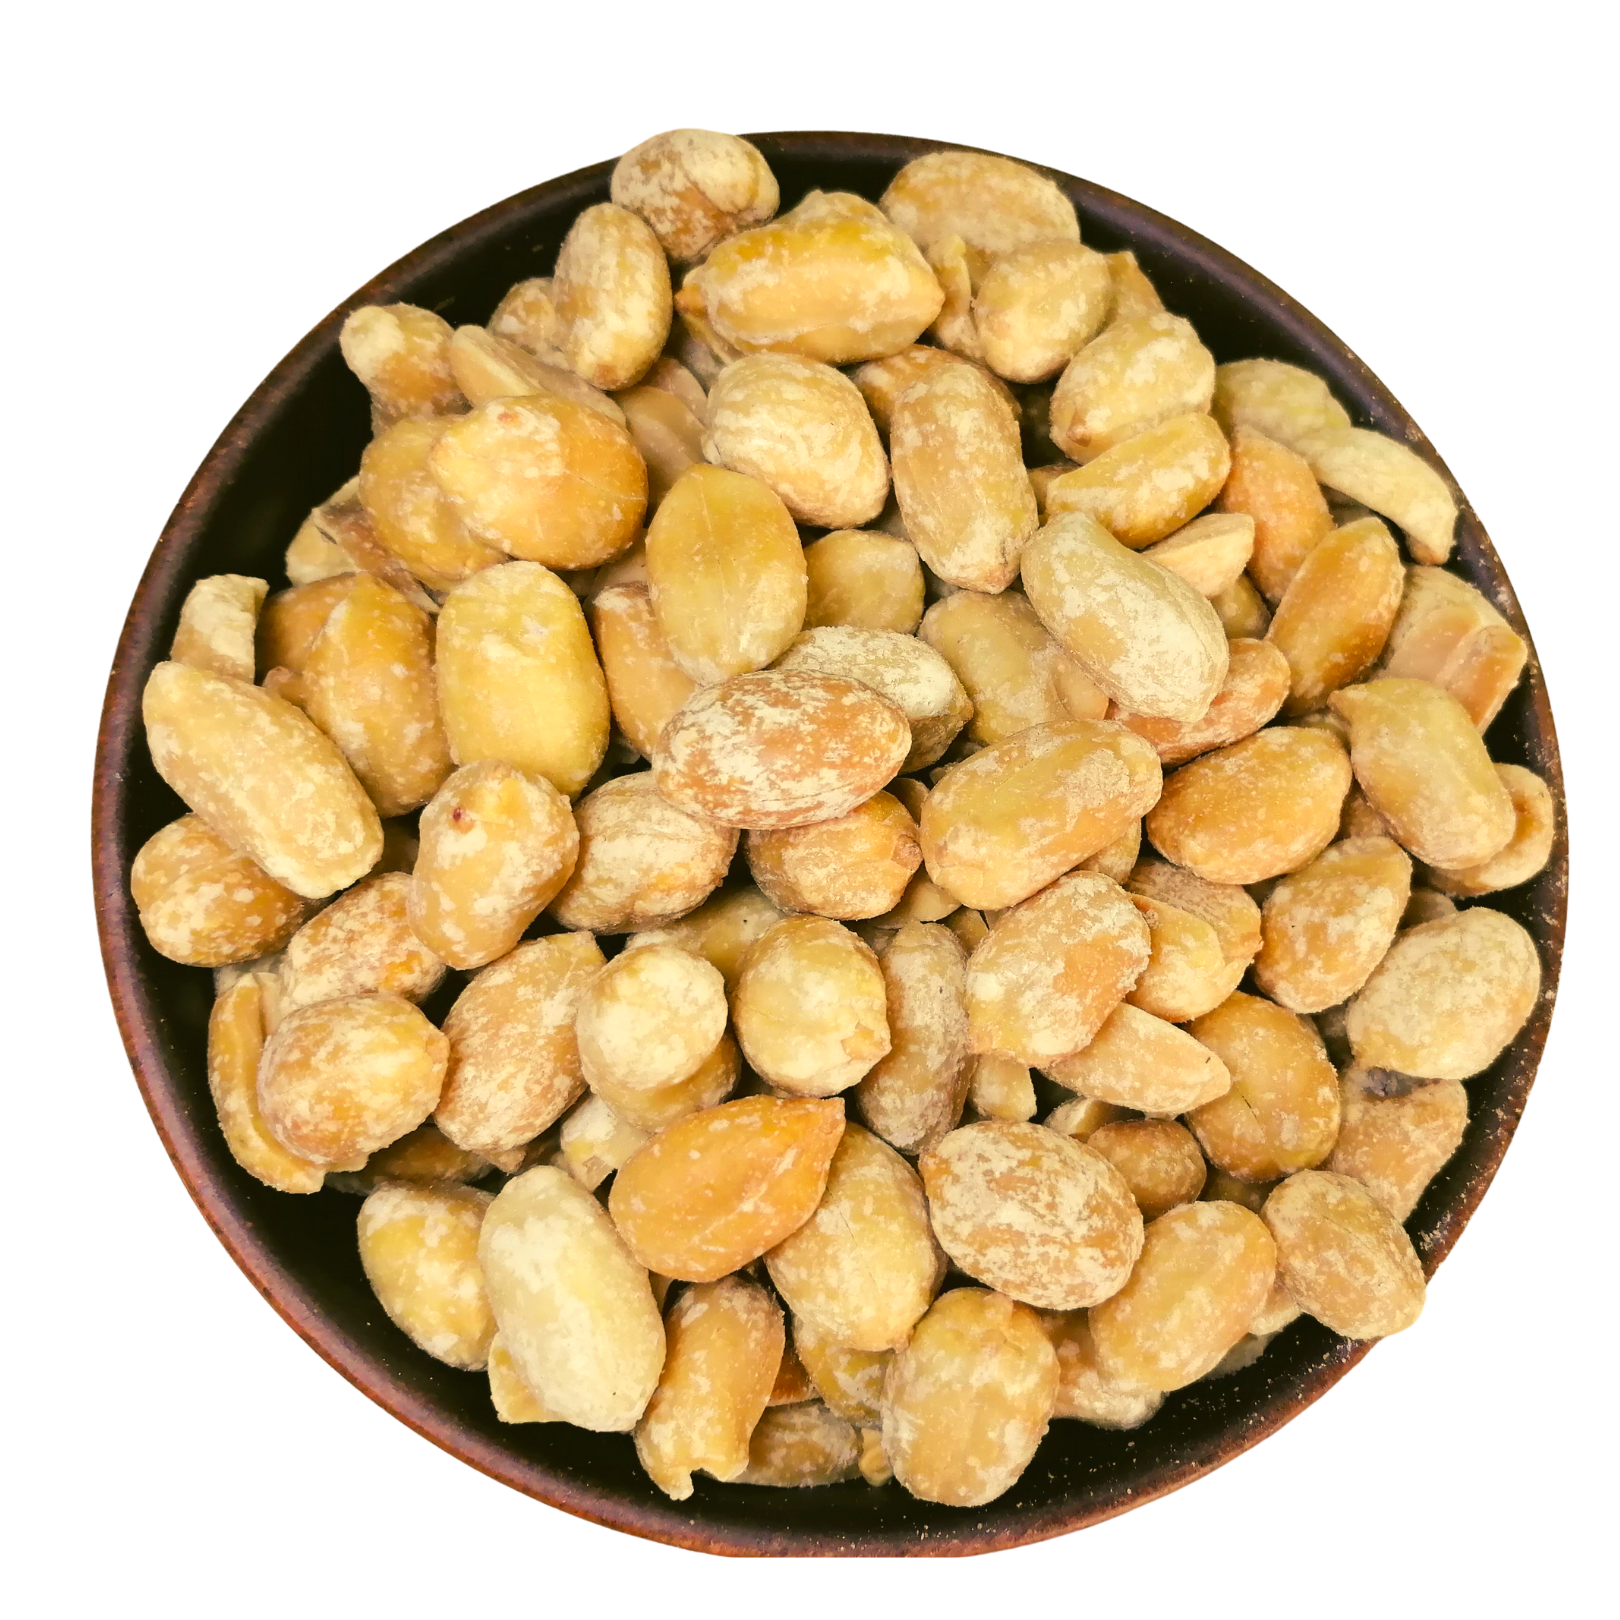 Г и арахиса. Арахис жареный соленый 500 гр. Арахис жареный соленый 100 г. Соленые орешки. Пережаренный арахис.